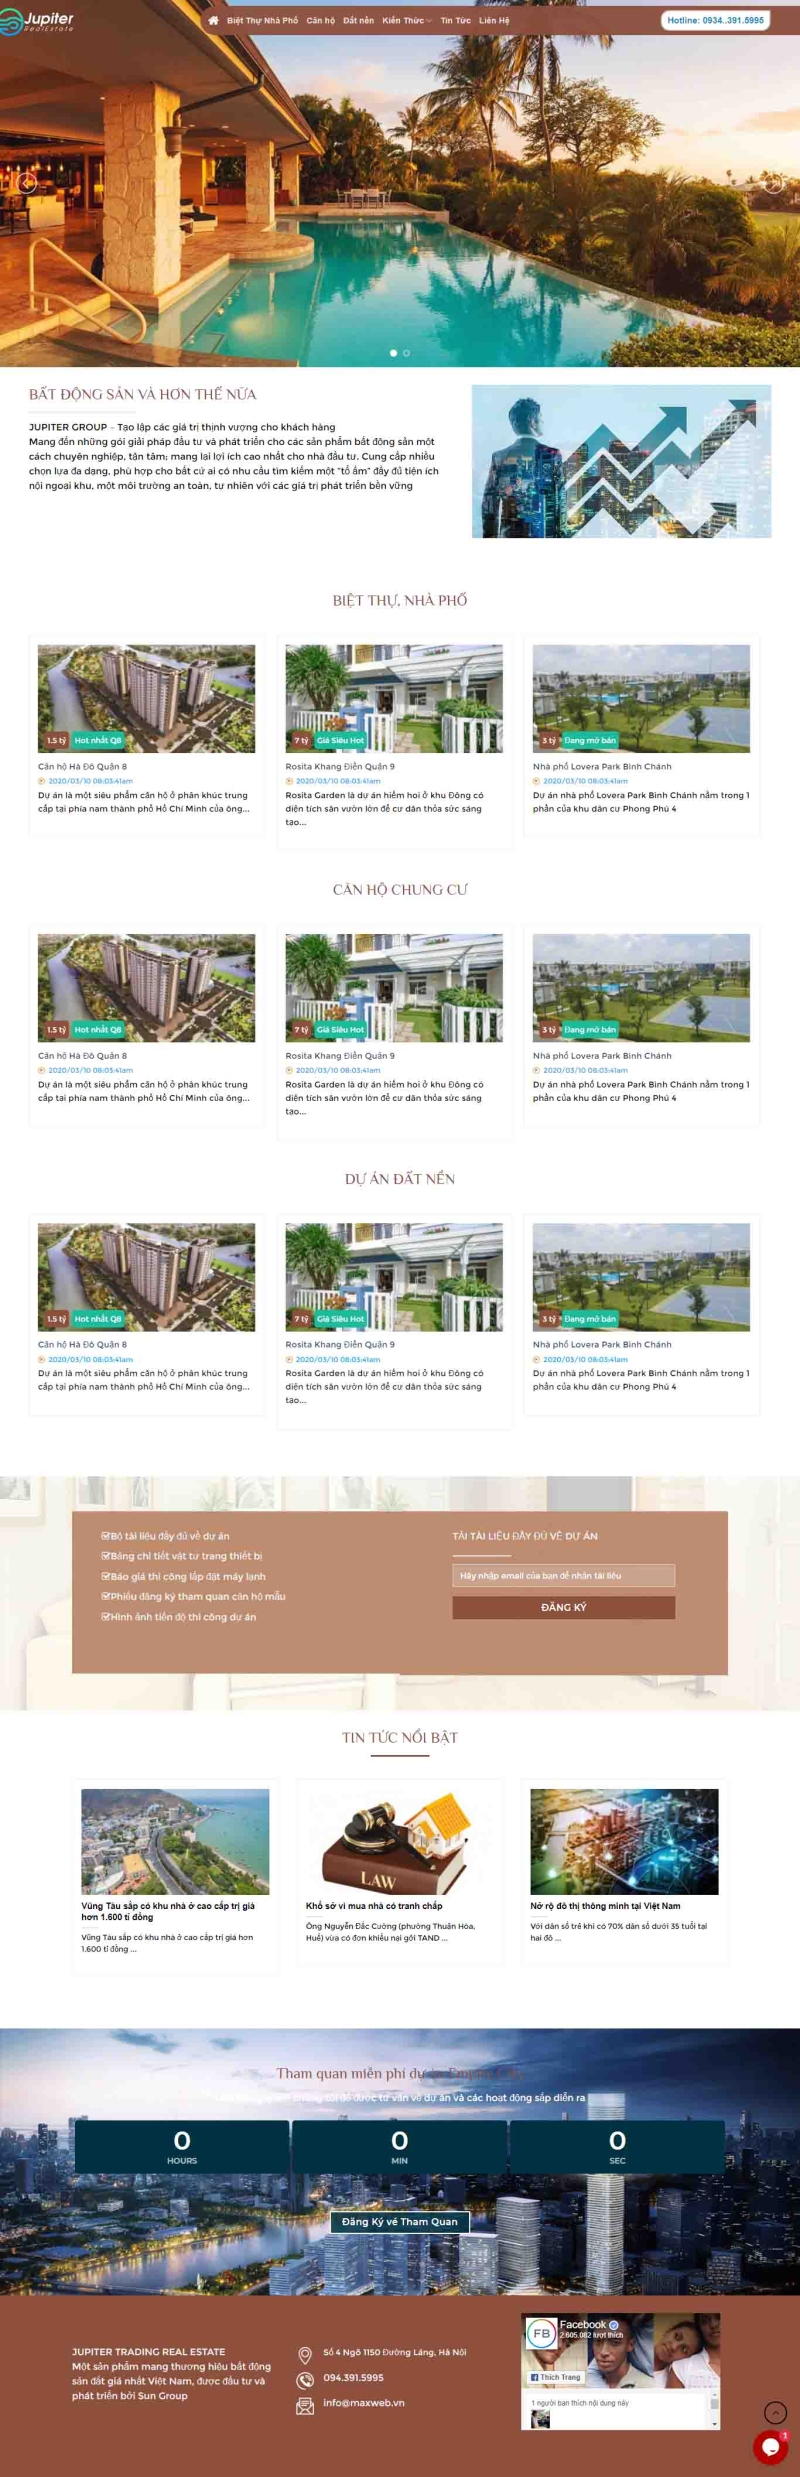 Mẫu giao diện thiết kế web bất động sản